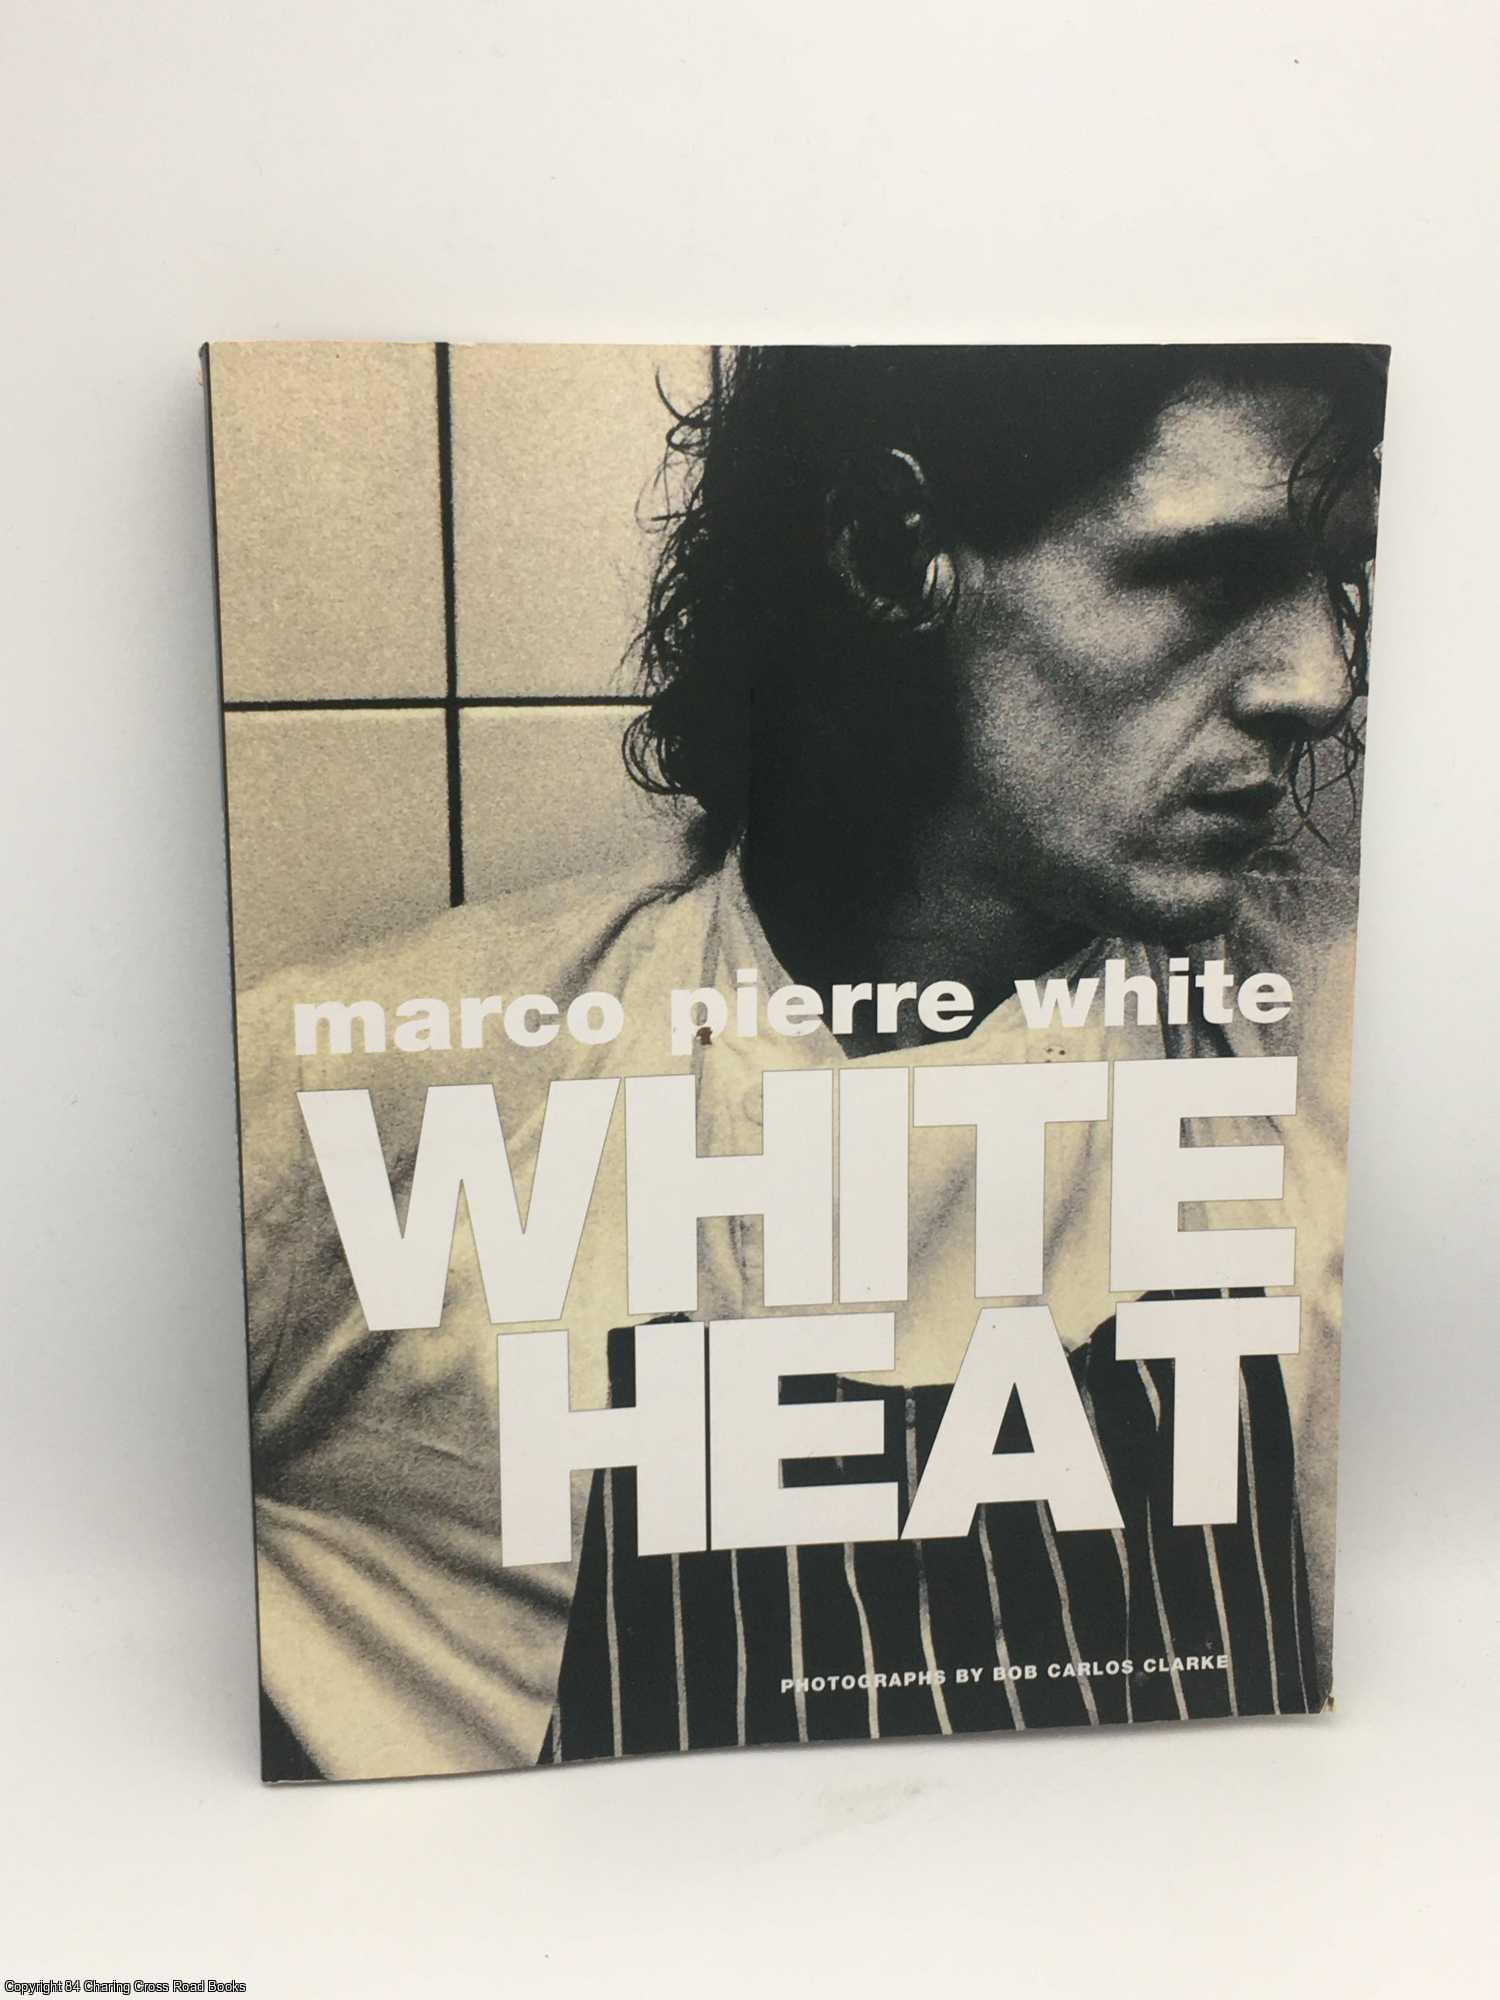 White, Marco Pierre - White Heat